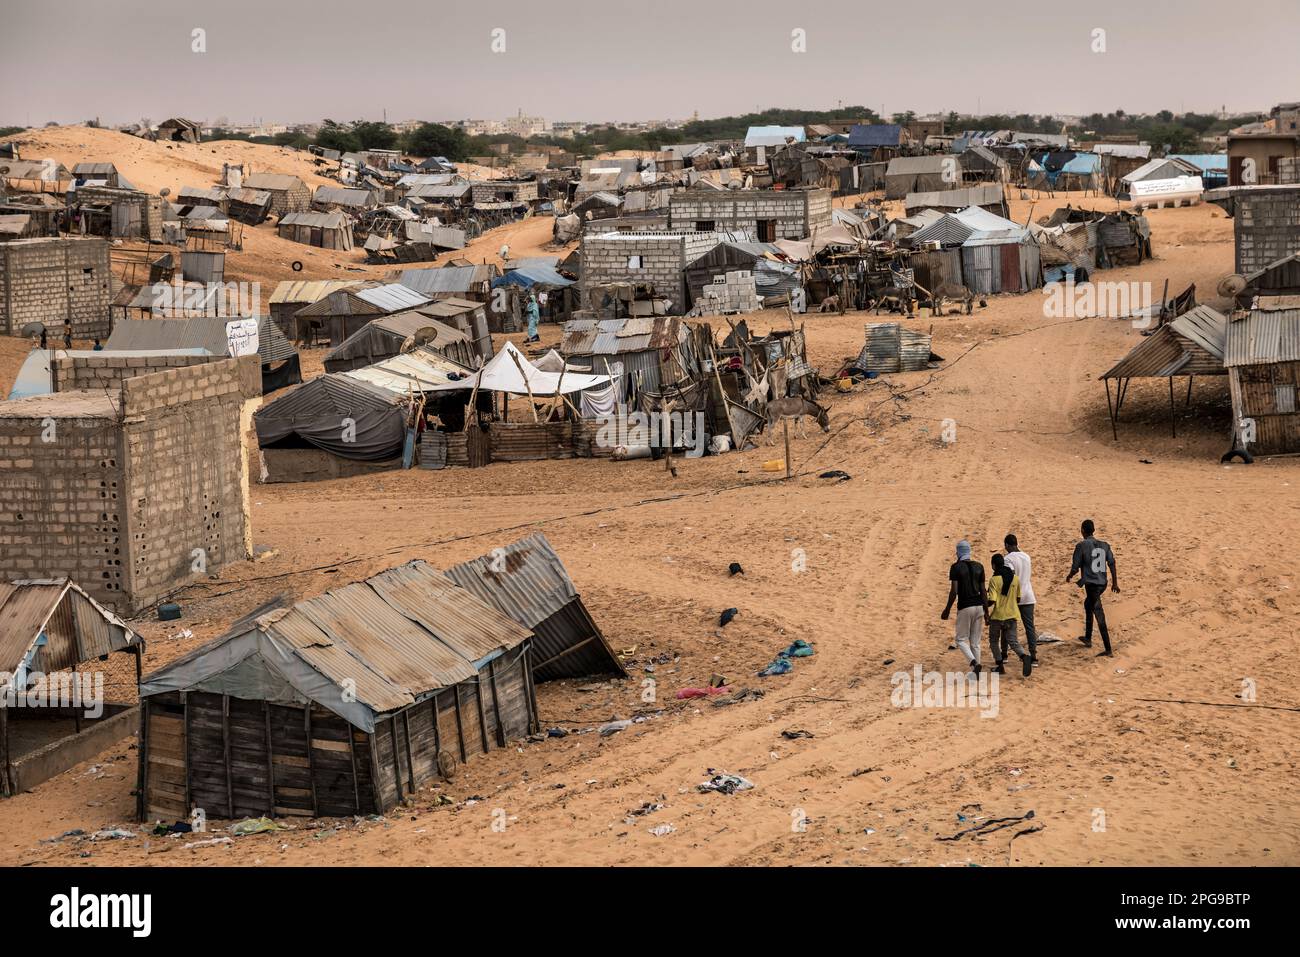 Straßenszenen im Limghit Slum in Nouakshott, der Hauptstadt Mauretaniens. Die meisten Menschen, die hier leben, stammen aus dem Haratin-Stamm, der in vielerlei Hinsicht benachteiligt ist, zum Beispiel Bildungsmöglichkeiten. Der Bundesstaat gehört laut UNO zu den 40 am wenigsten entwickelten Ländern der Welt. Stockfoto